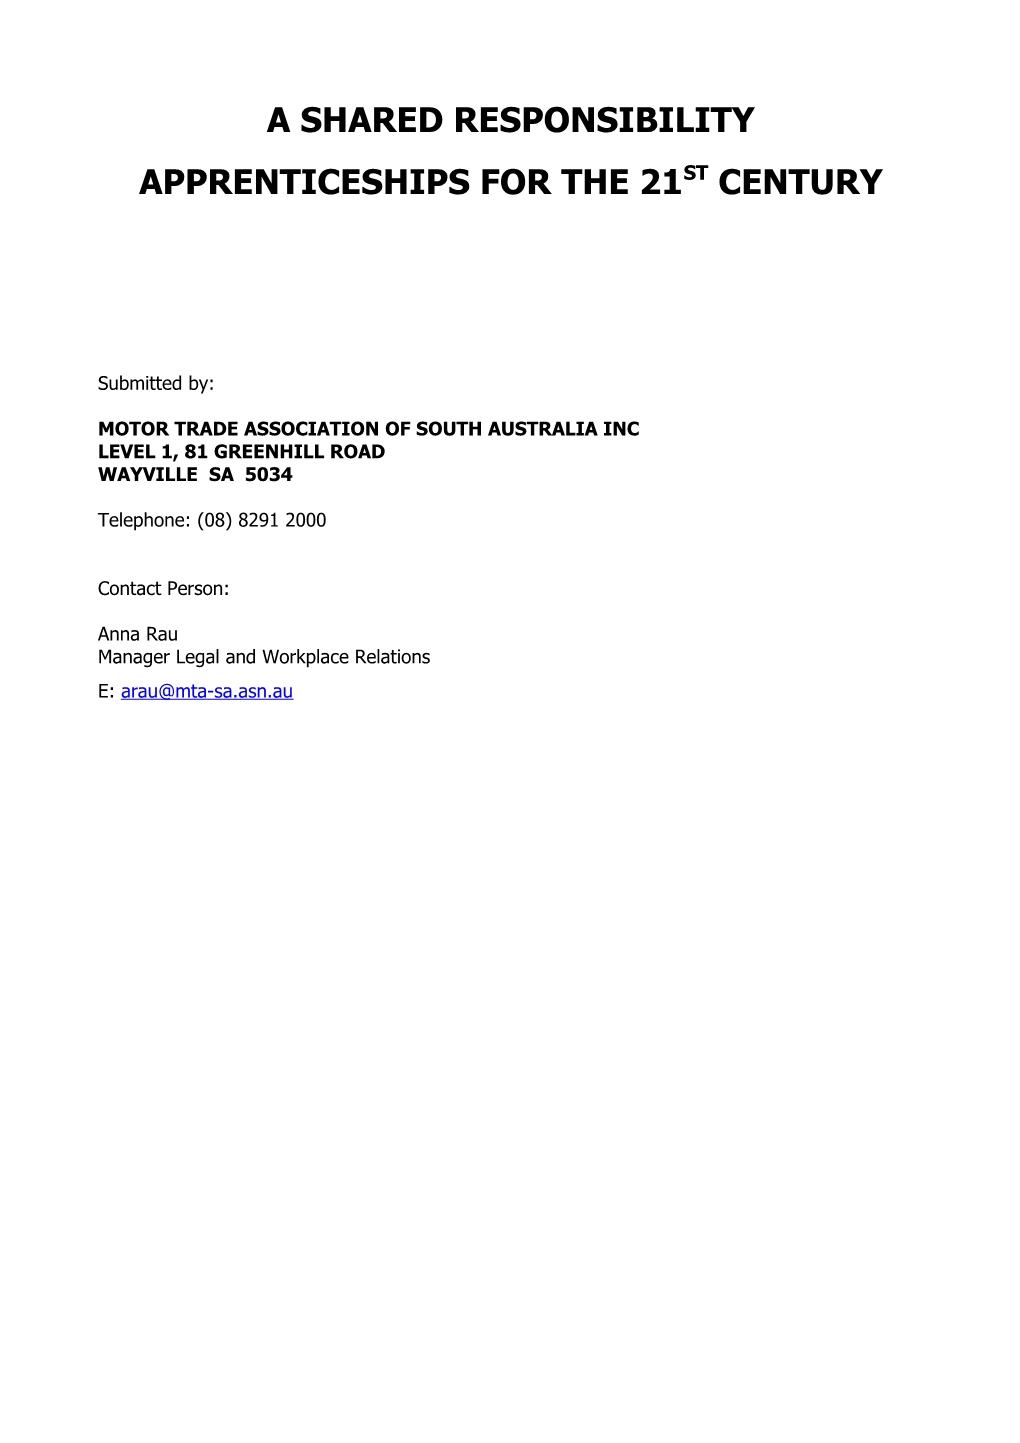 Motor Trade Association of South Australia Inc